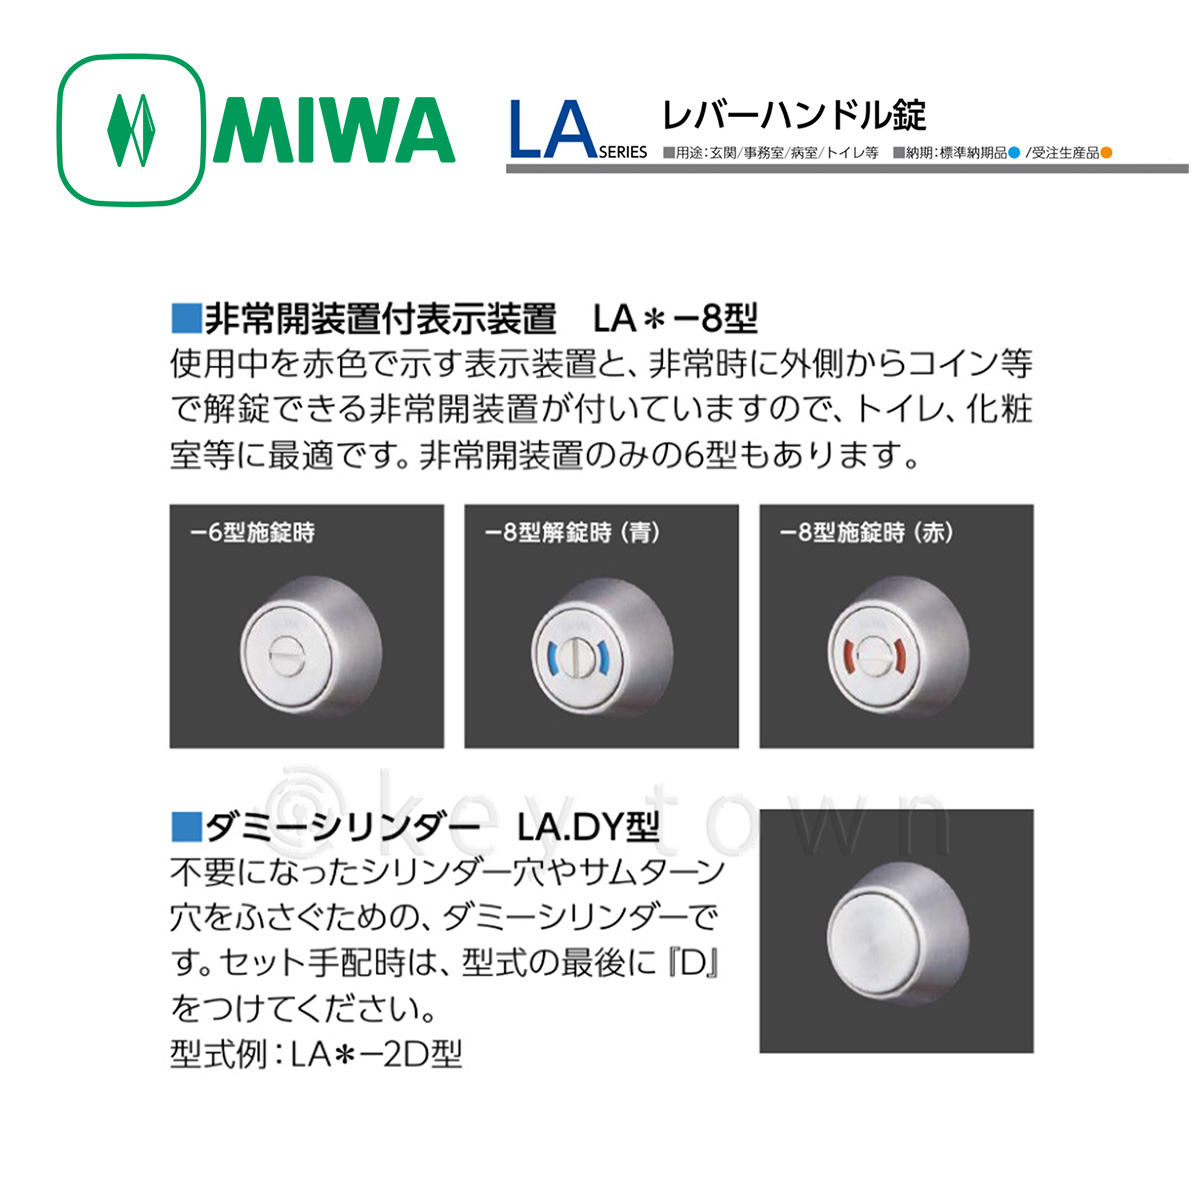 MIWA 【美和ロック】 レバーハンドル [MIWA-LA] U9LA52-1[MIWALA]｜鍵